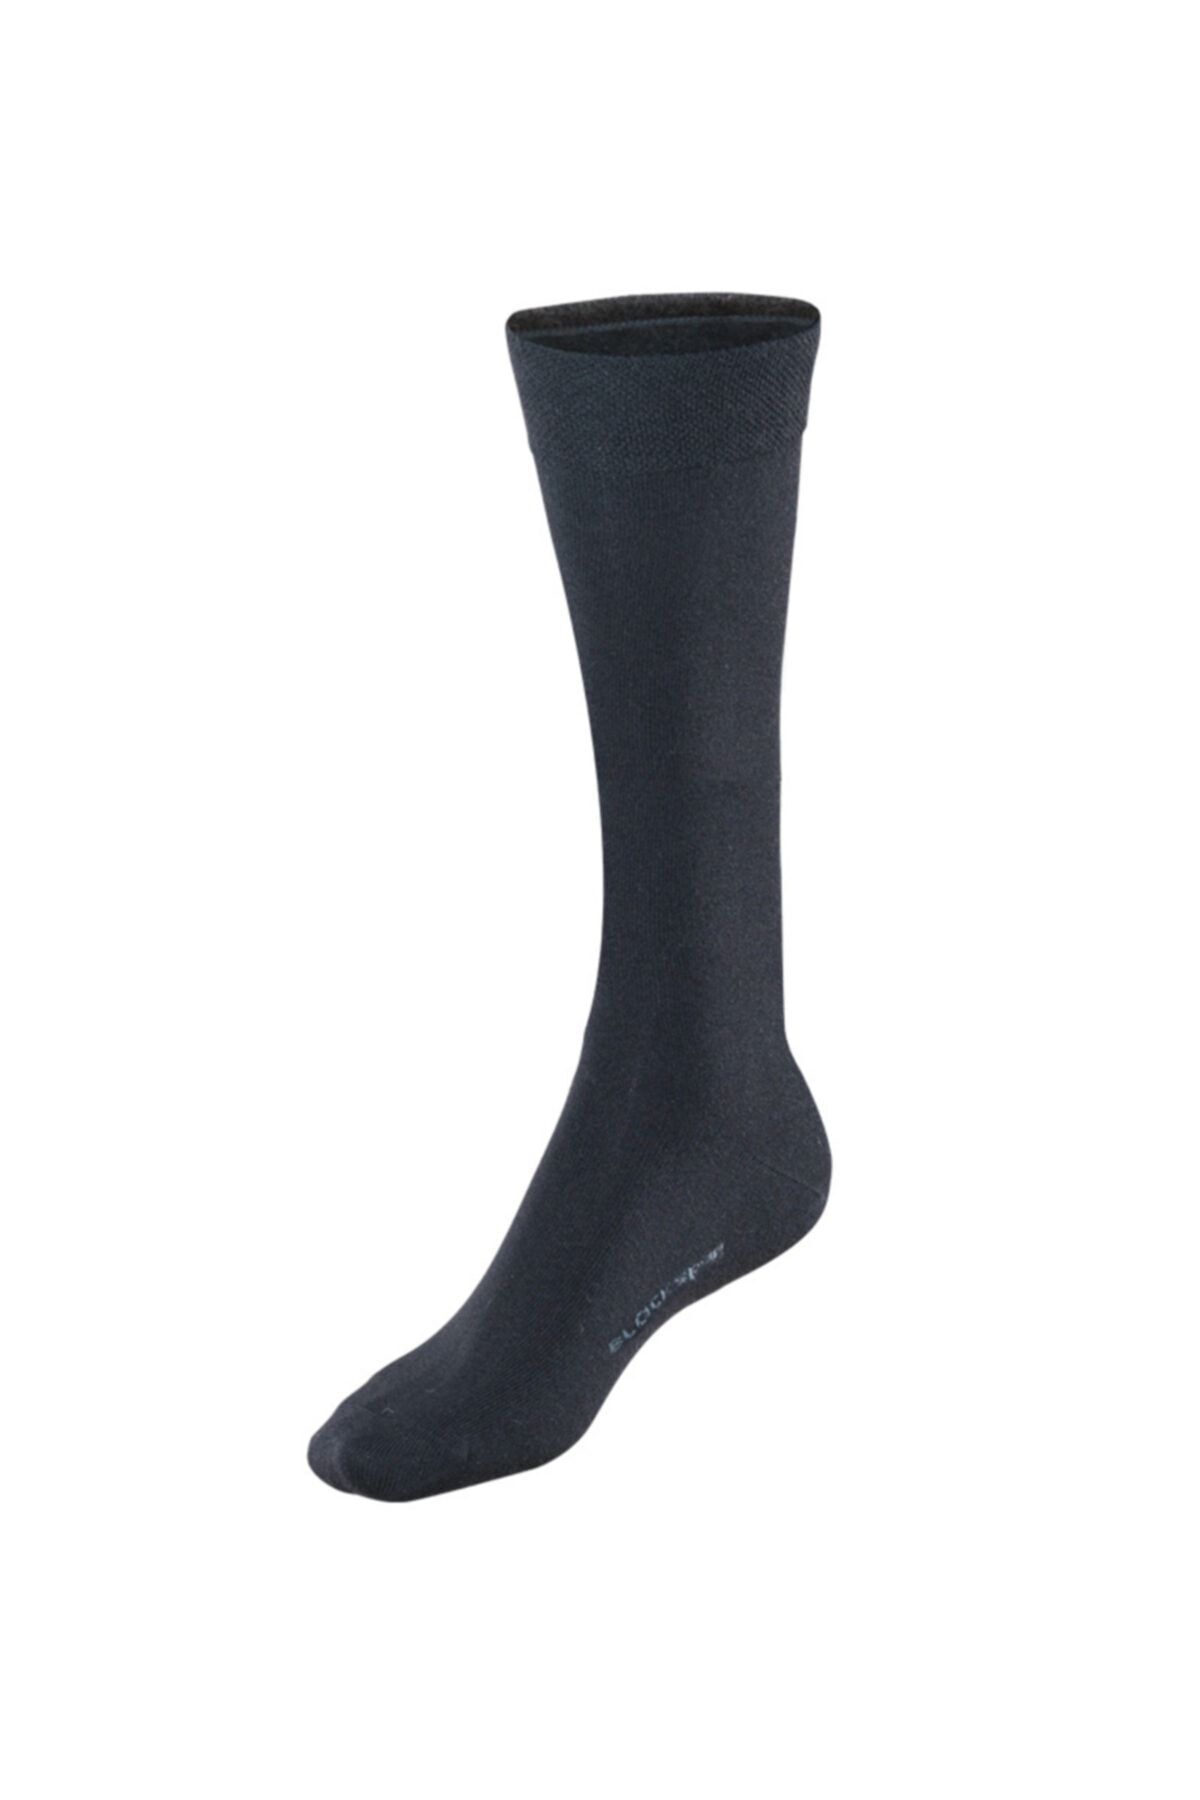 Blackspade Kadın Uzun Termal Çorap 9272 - Siyah